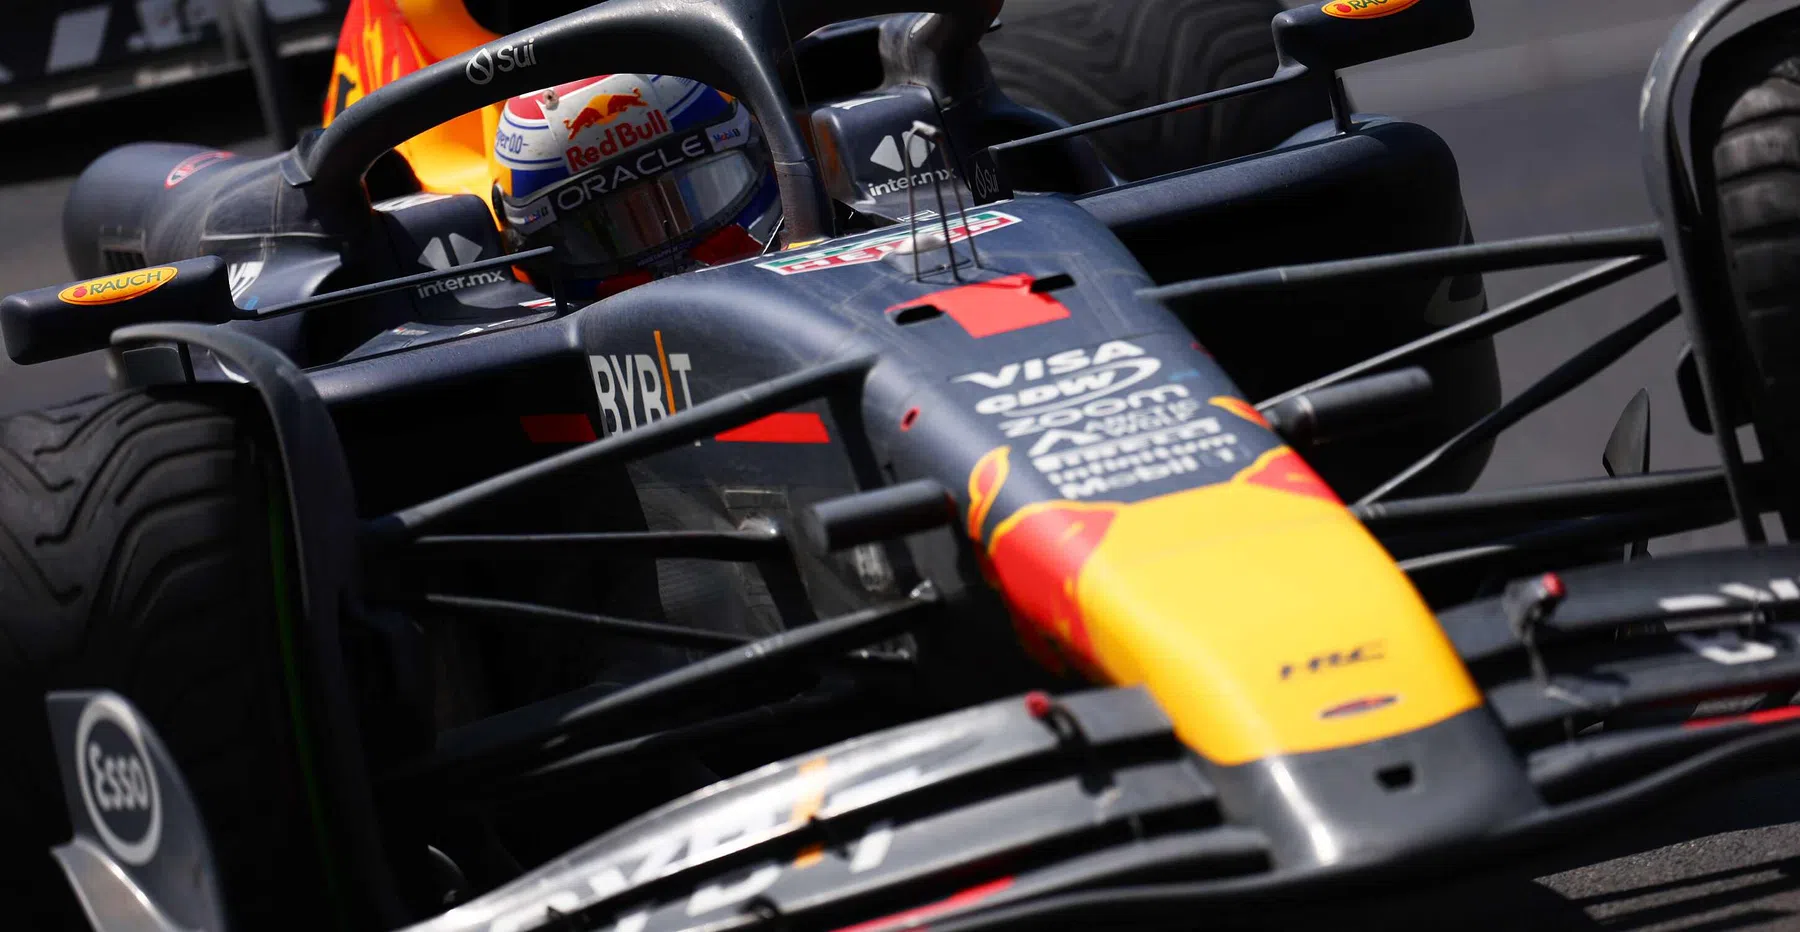 Red Bull menace d'utiliser une solution illégale si la FIA n'intervient pas